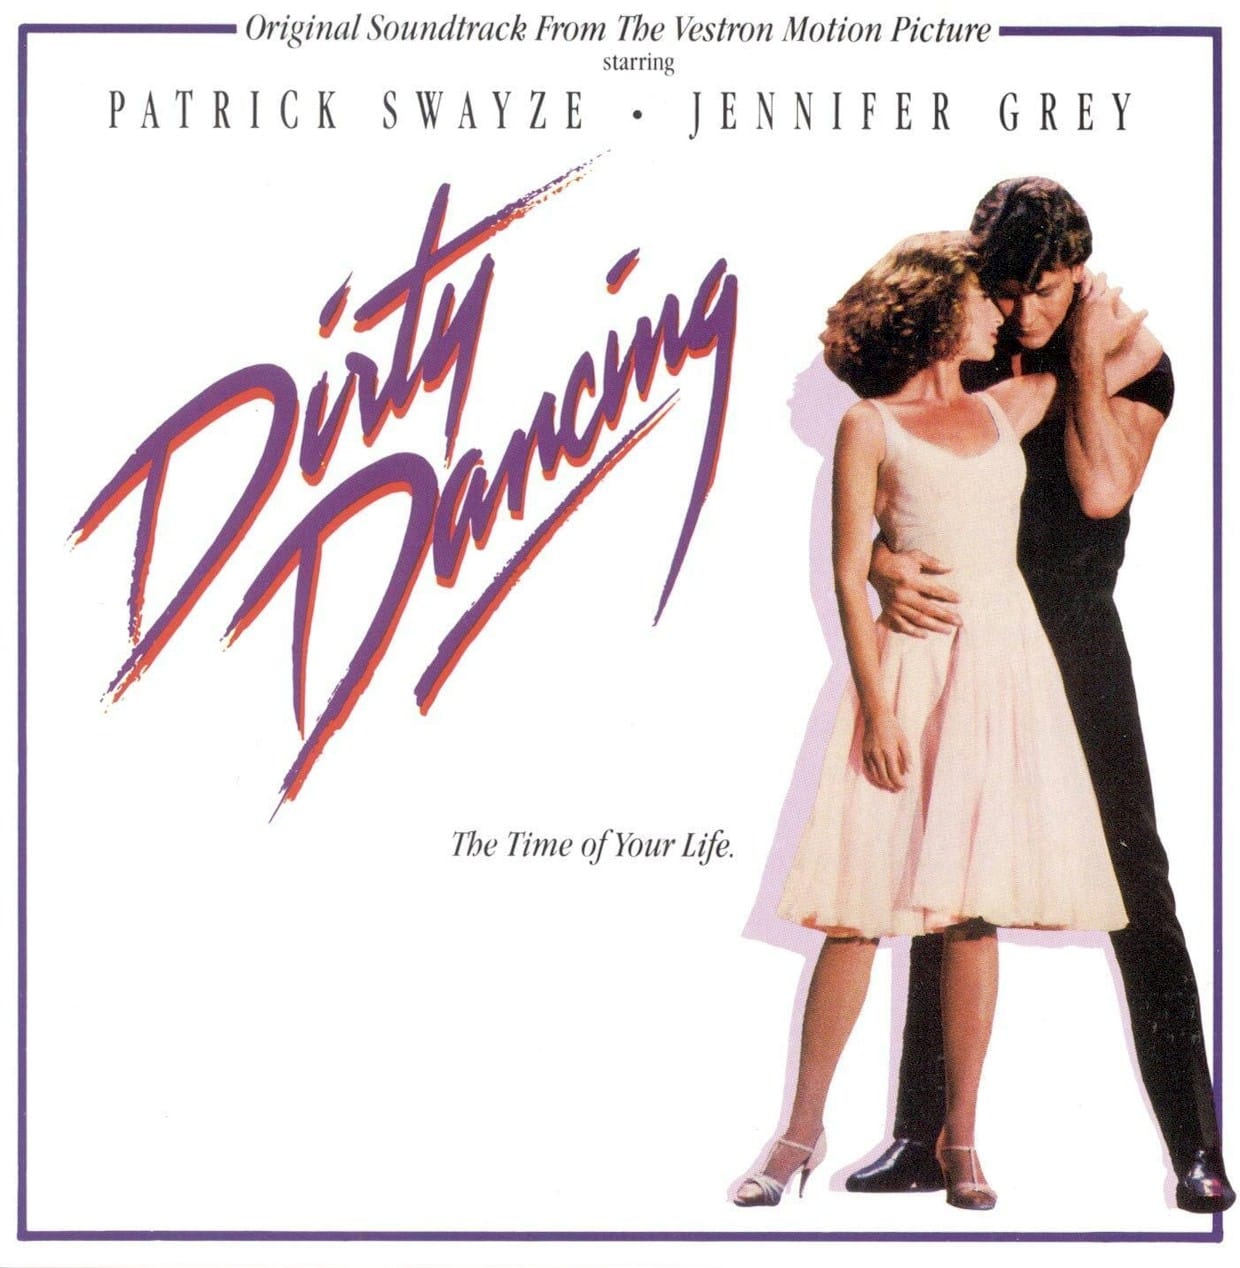 Trilha sonora de “Dirty Dancing” será relançada em vinil comemorativo